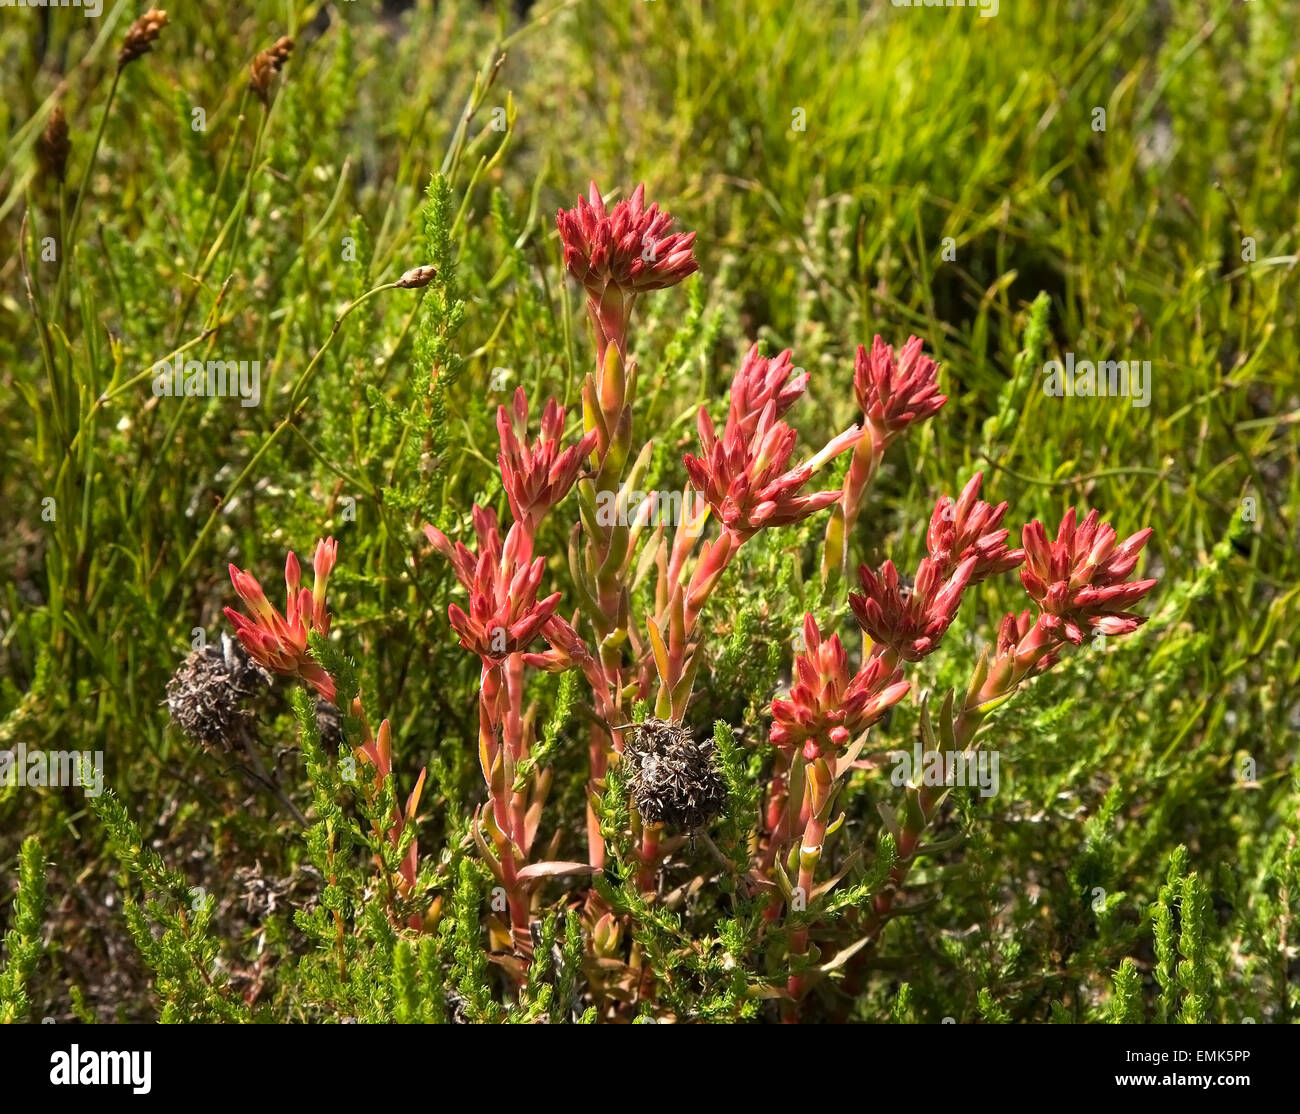 Crassula fascicularis succulent plant, Cape Region, South Africa Stock Photo